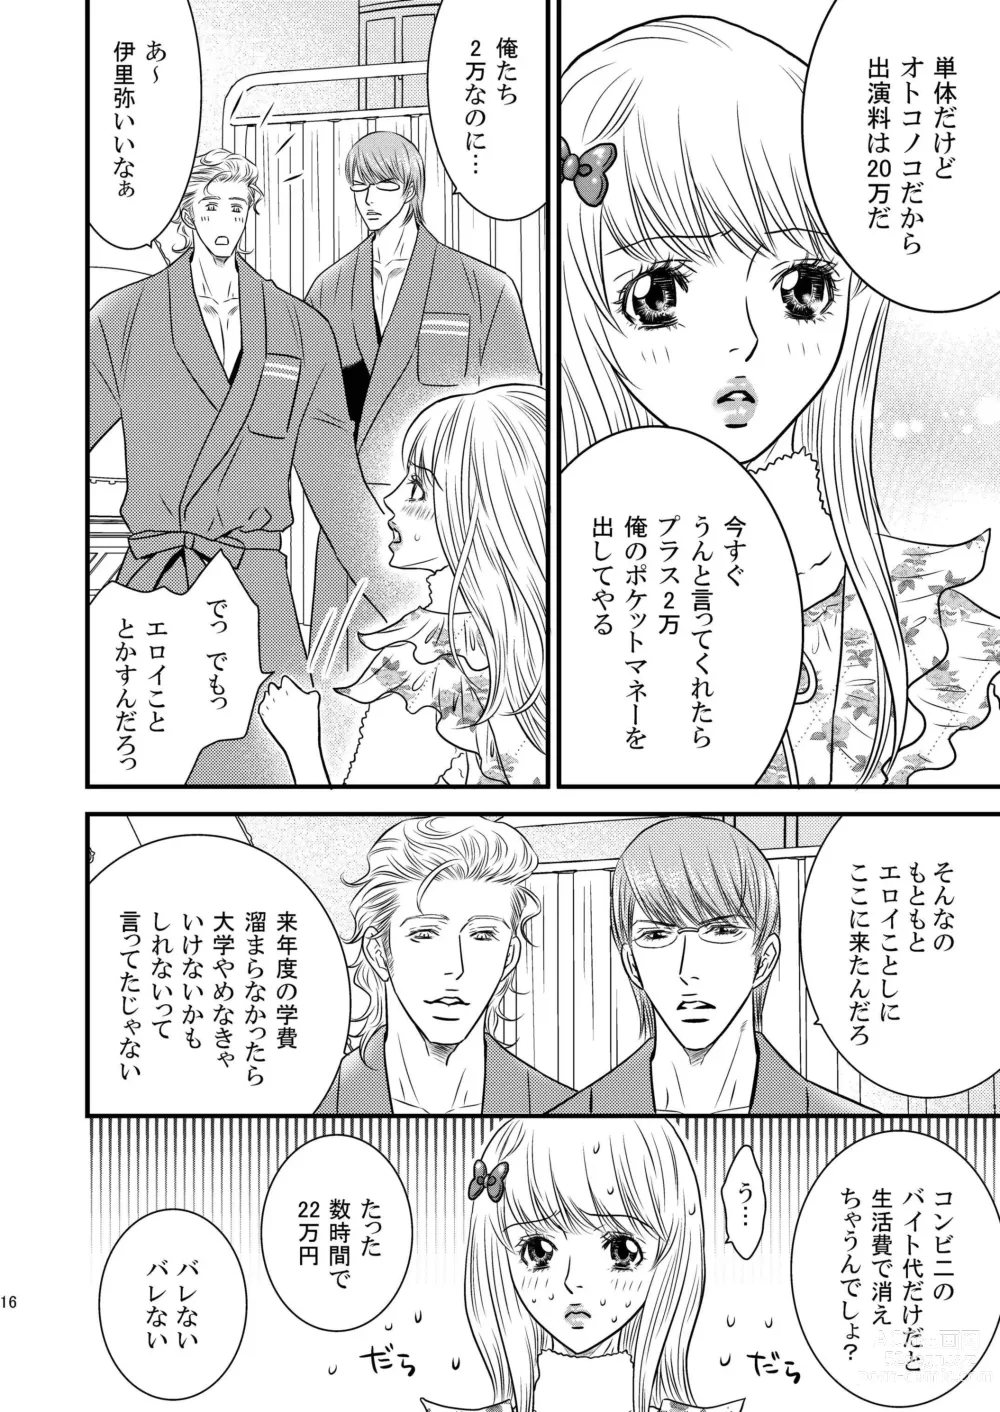 Page 16 of doujinshi Sparkling ORANGE!